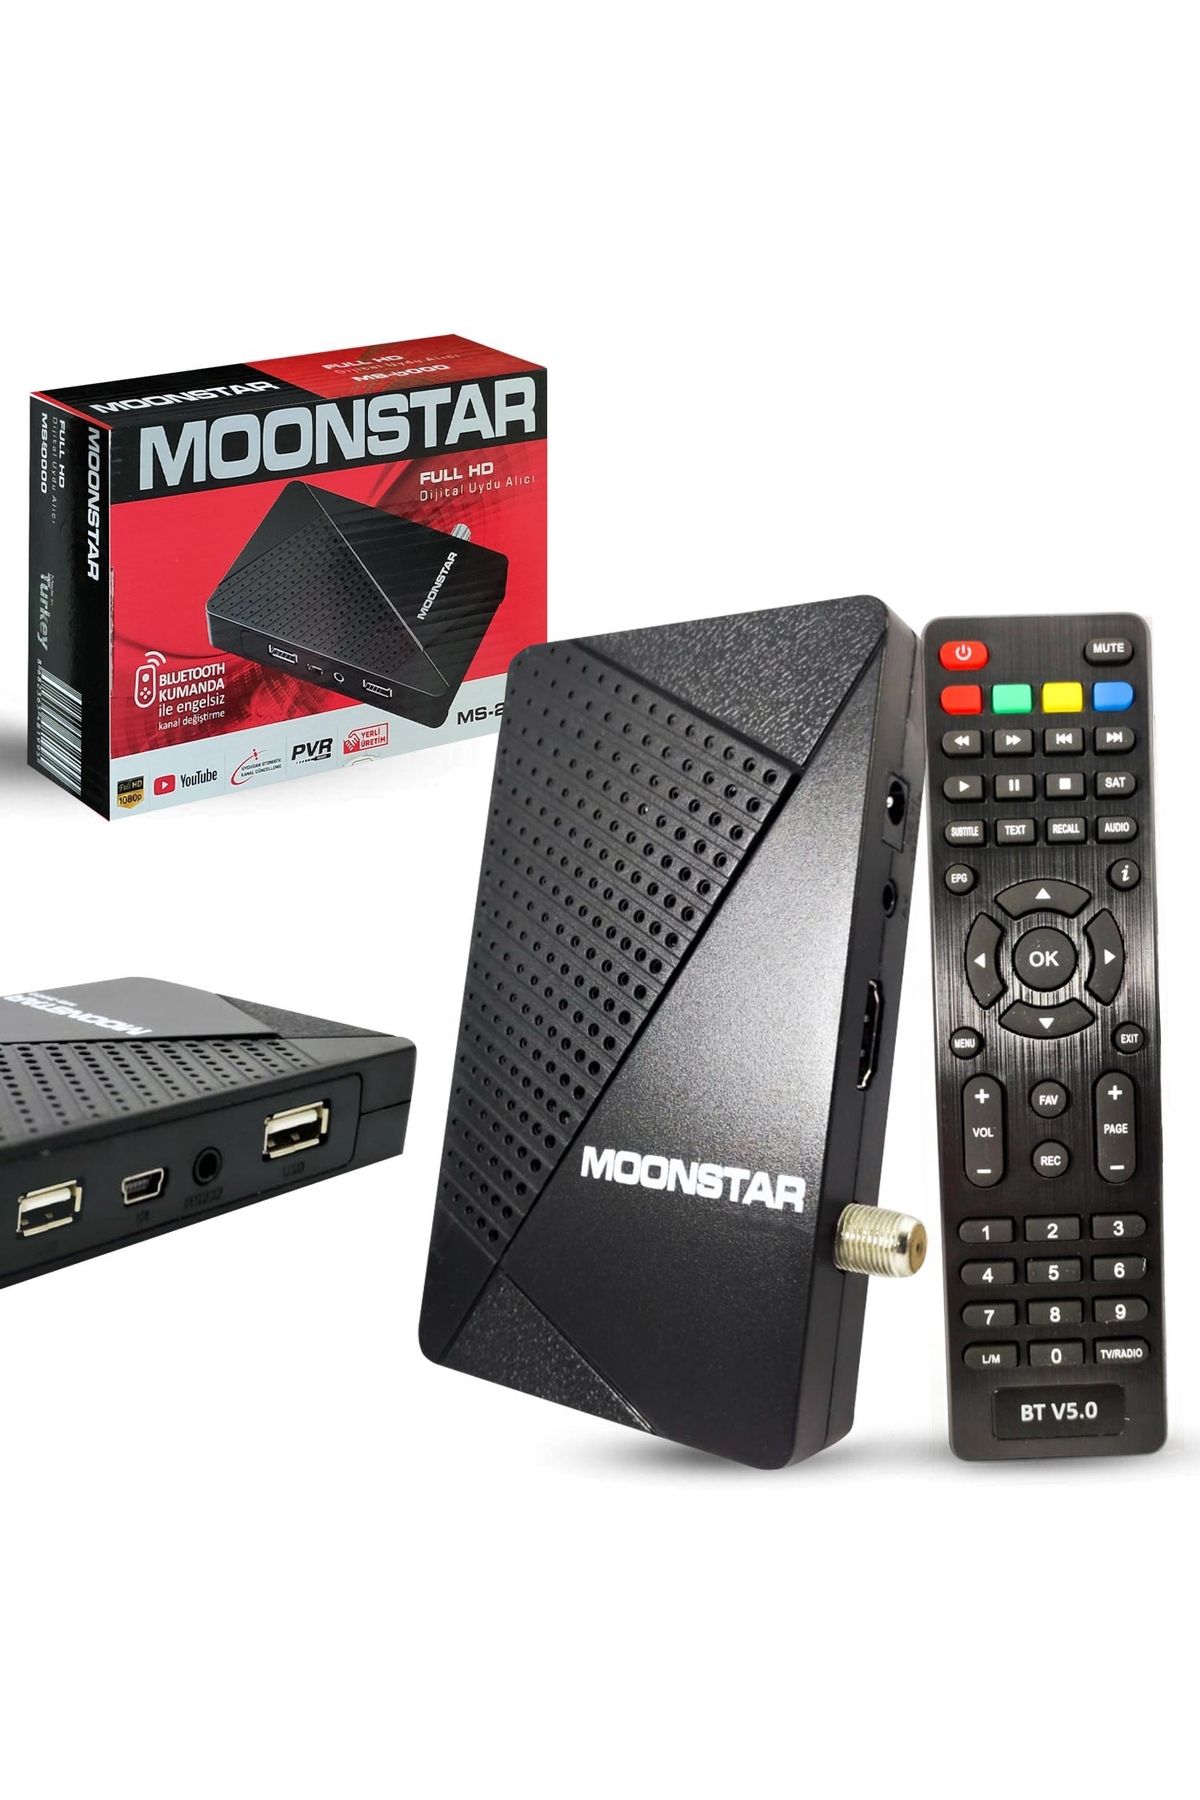 Moonstar Ms-2000 Uydu Alıcı Mini Full Hd Bluetooth Ile Kanal Değiştirme Youtube Destekli